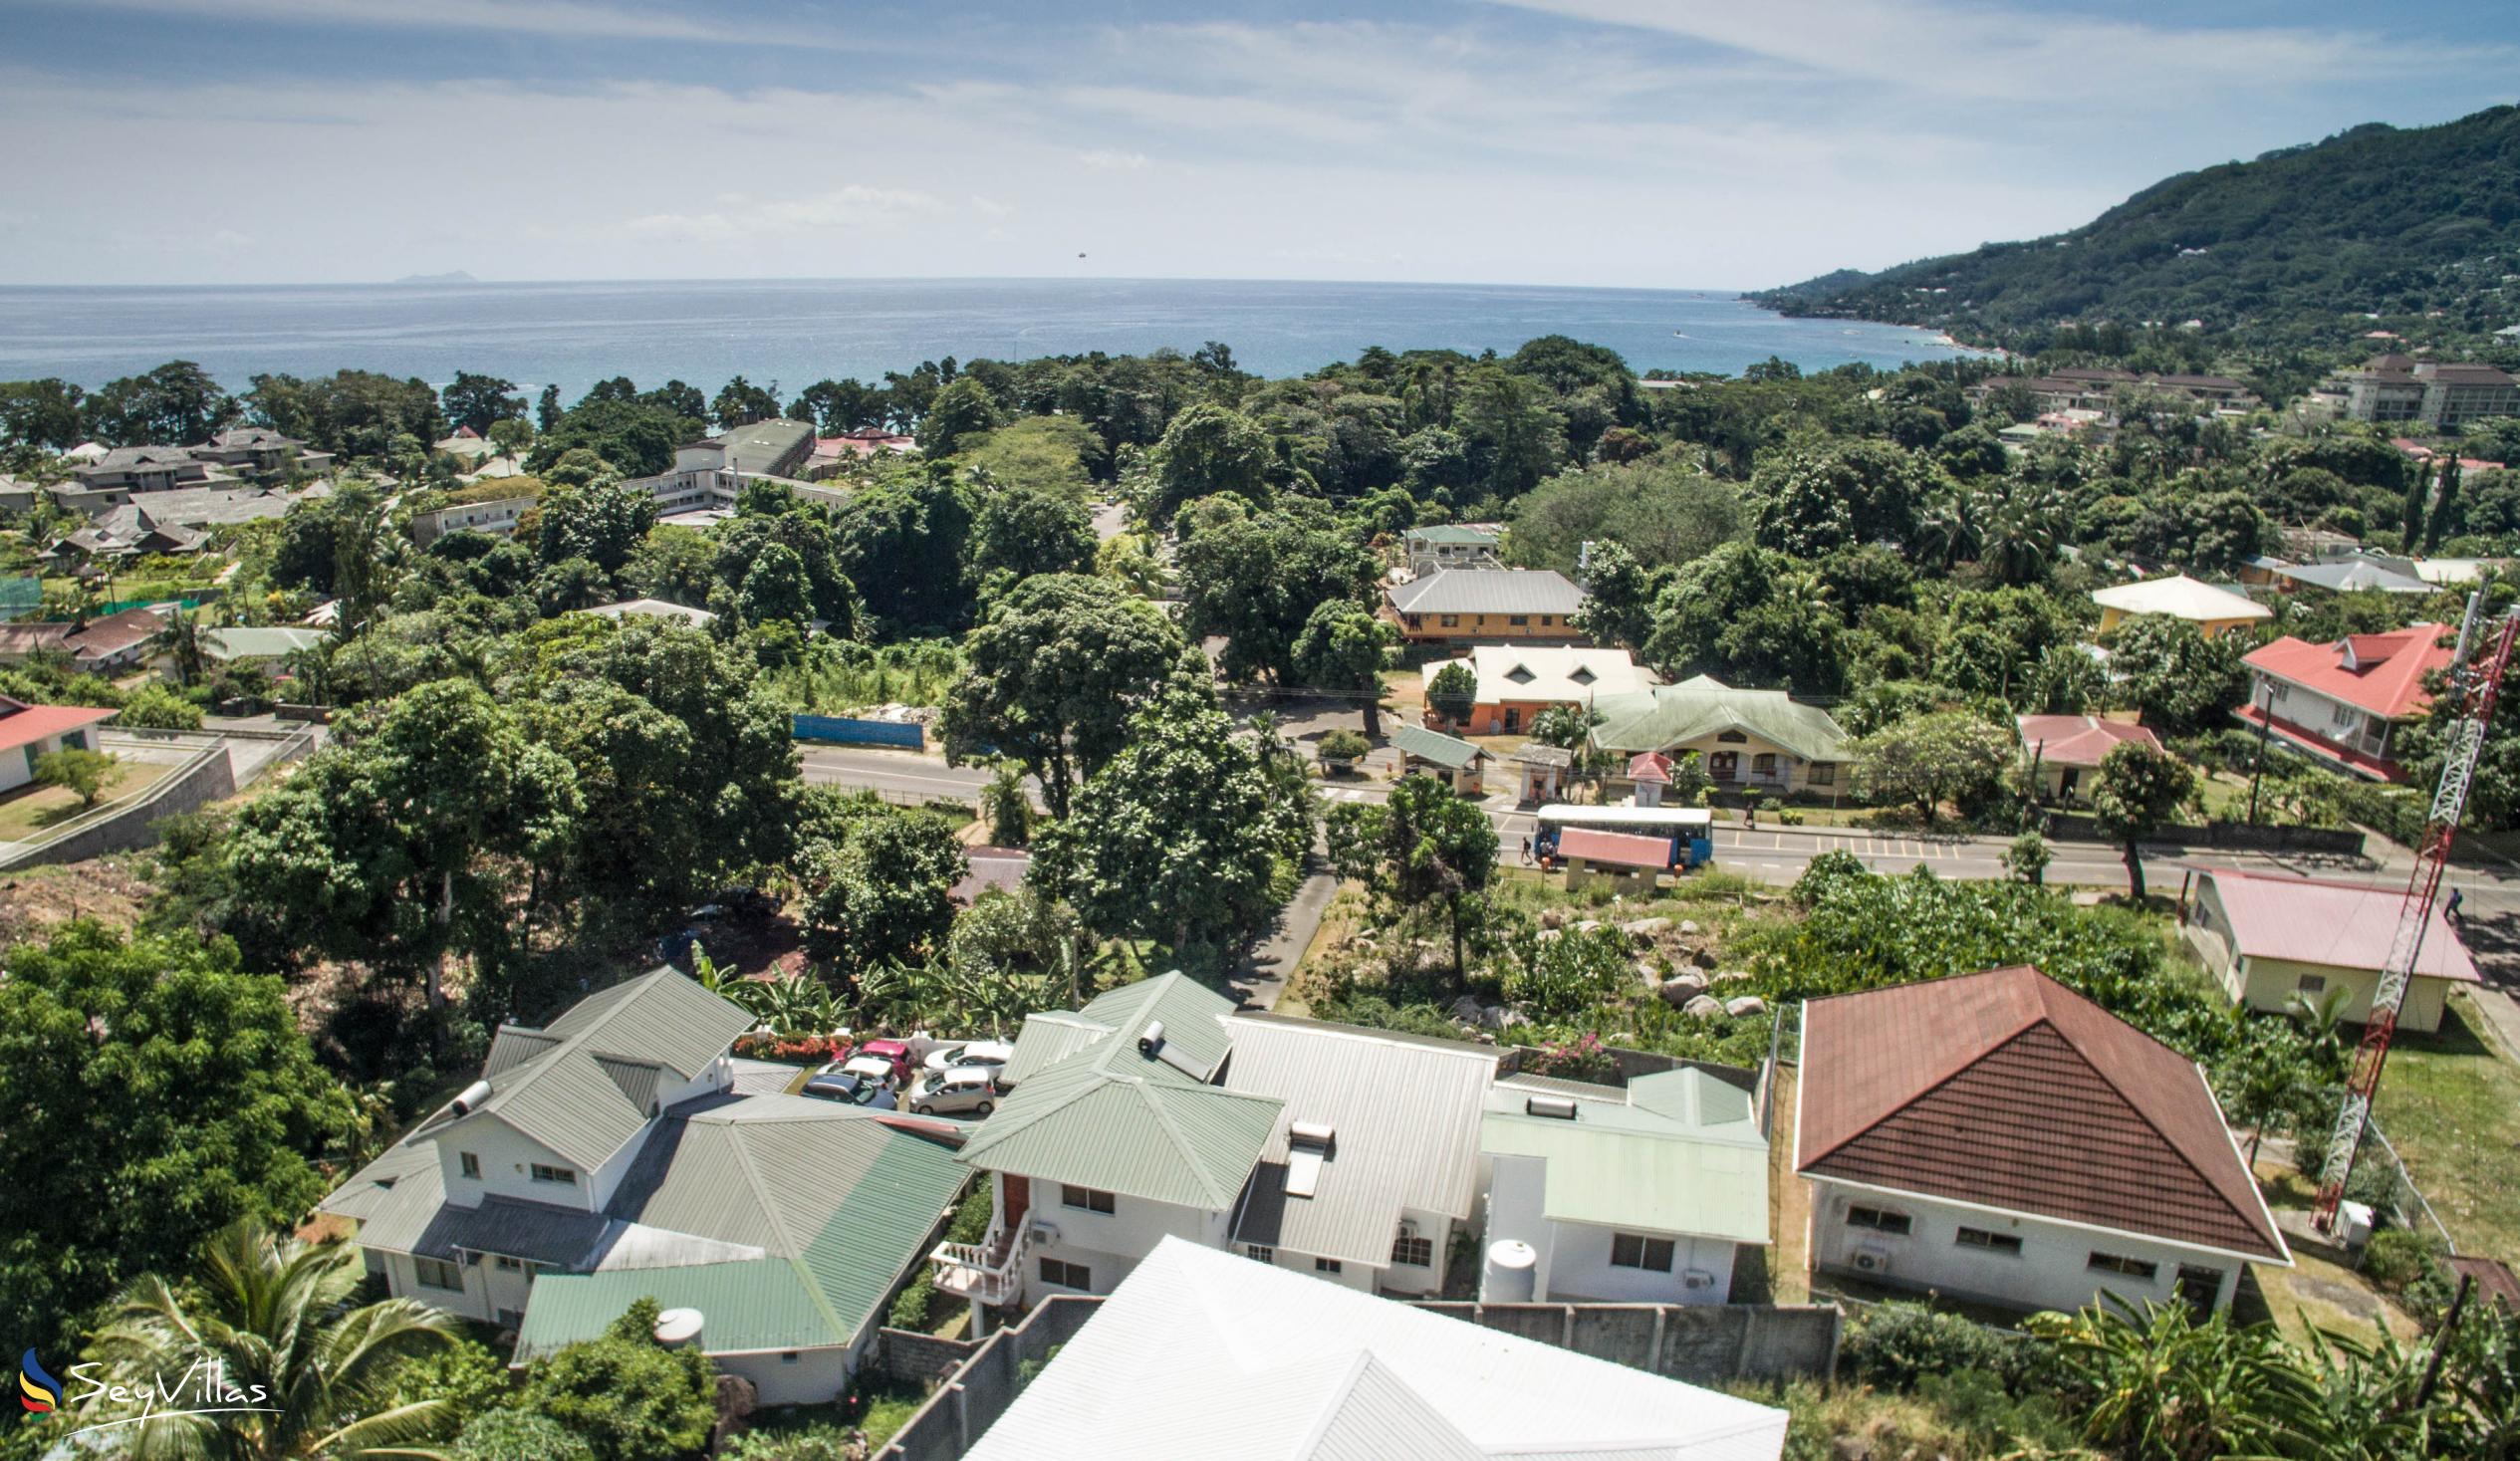 Photo 2: Row's Villa - Location - Mahé (Seychelles)